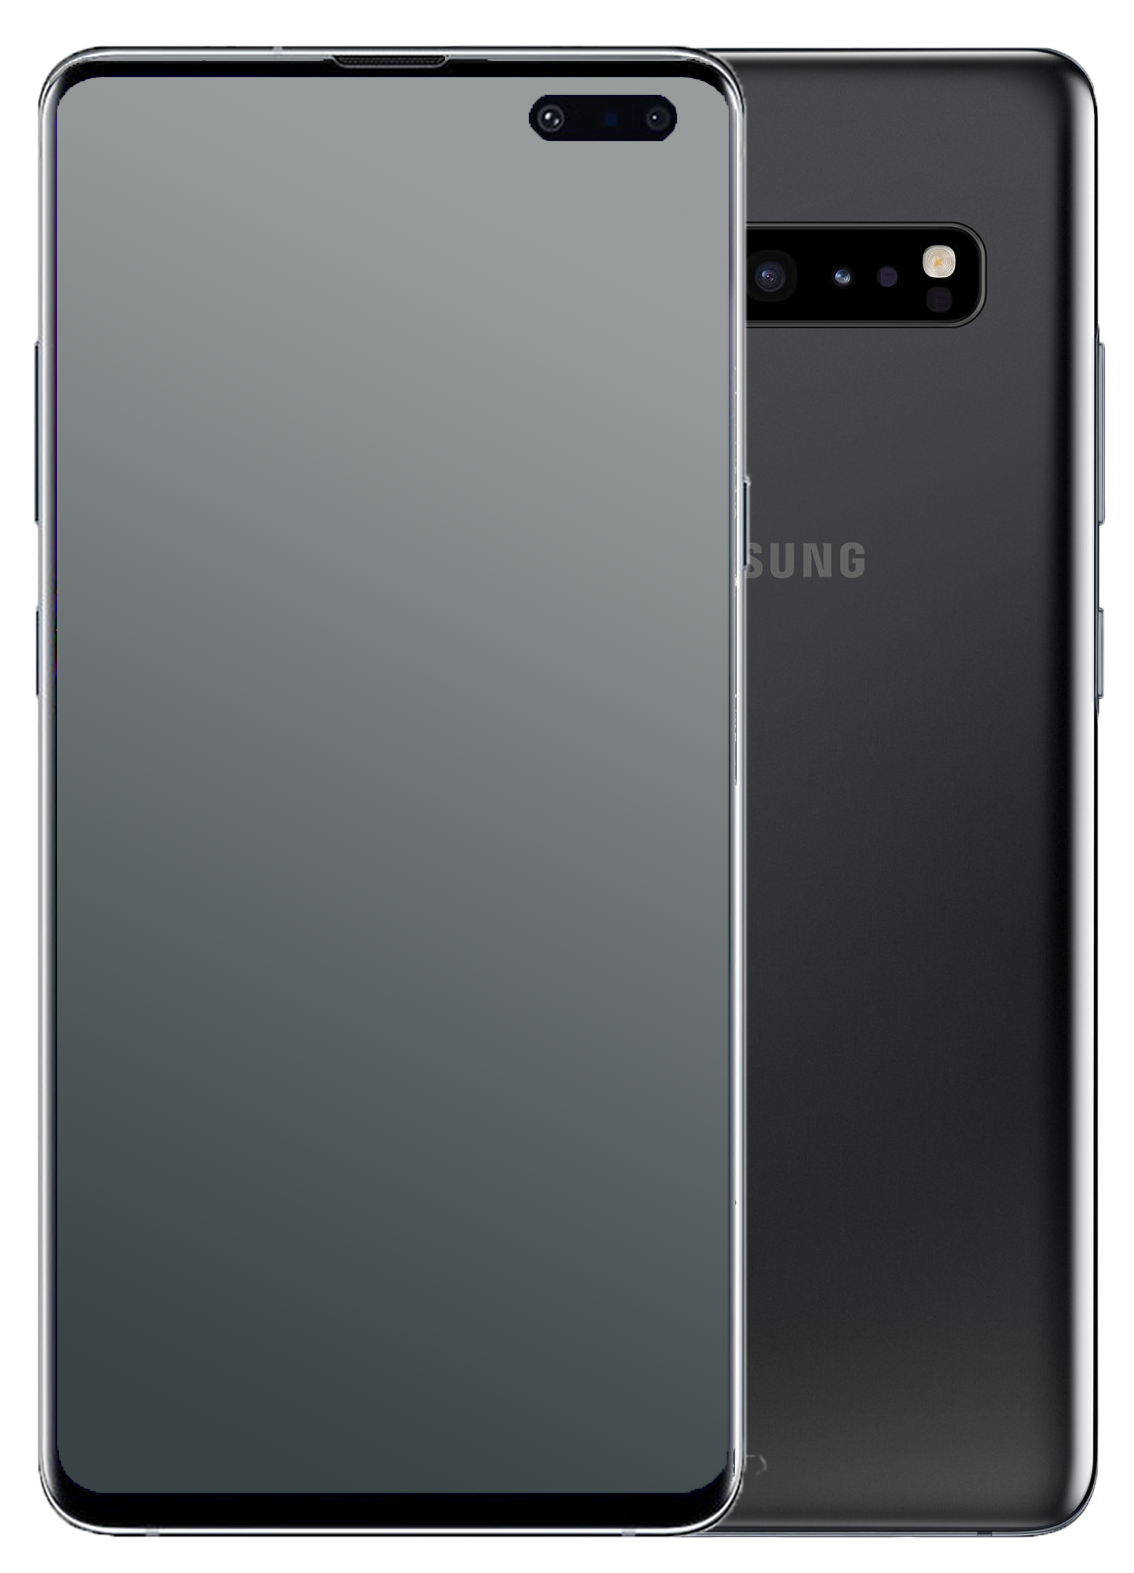 Samsung Galaxy S10 5G Single-SIM schwarz - Ohne Vertrag